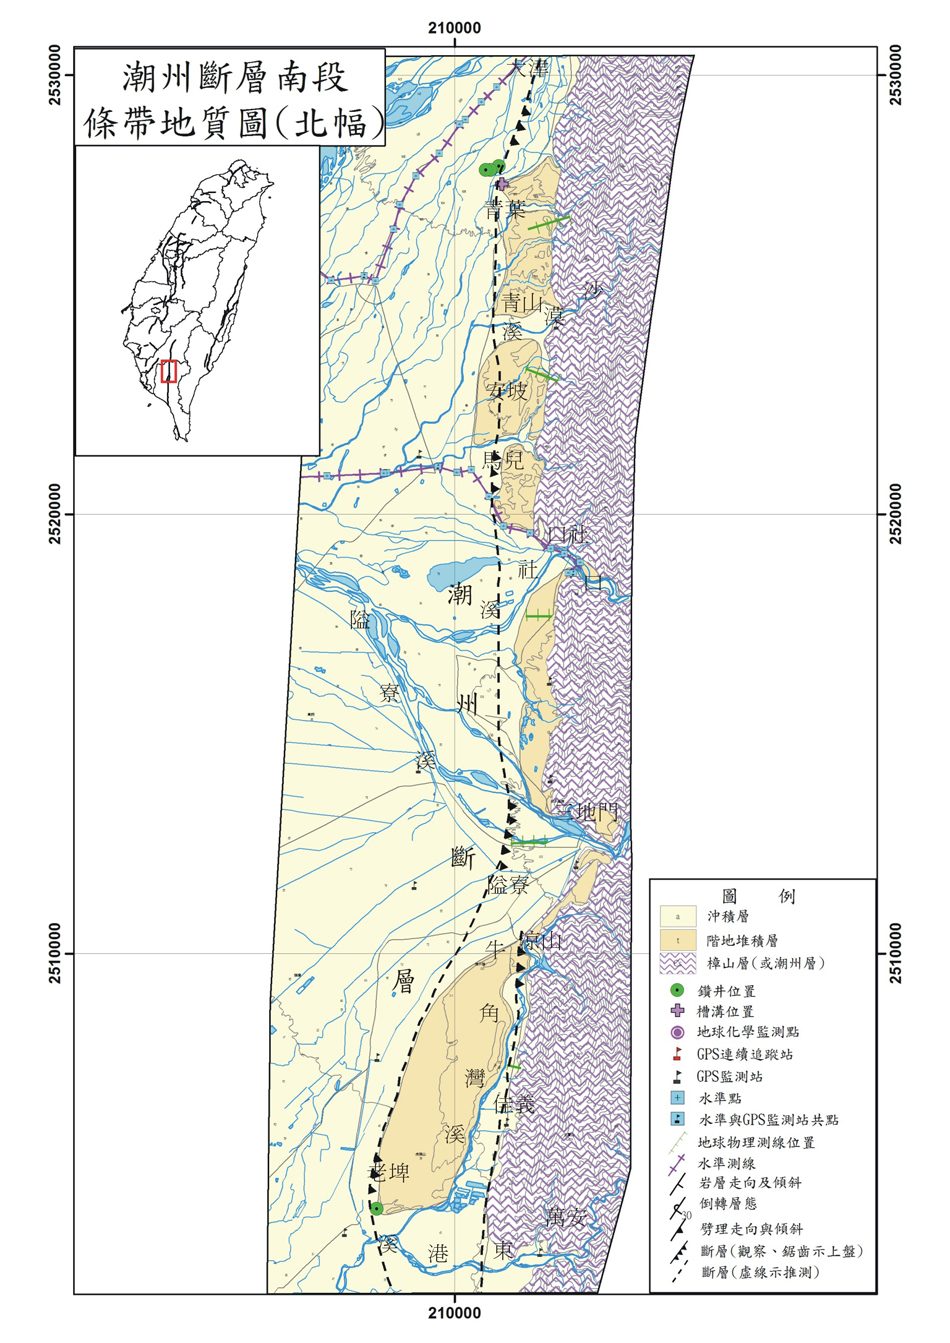 潮州斷層條帶地質圖。B：南段（北幅）